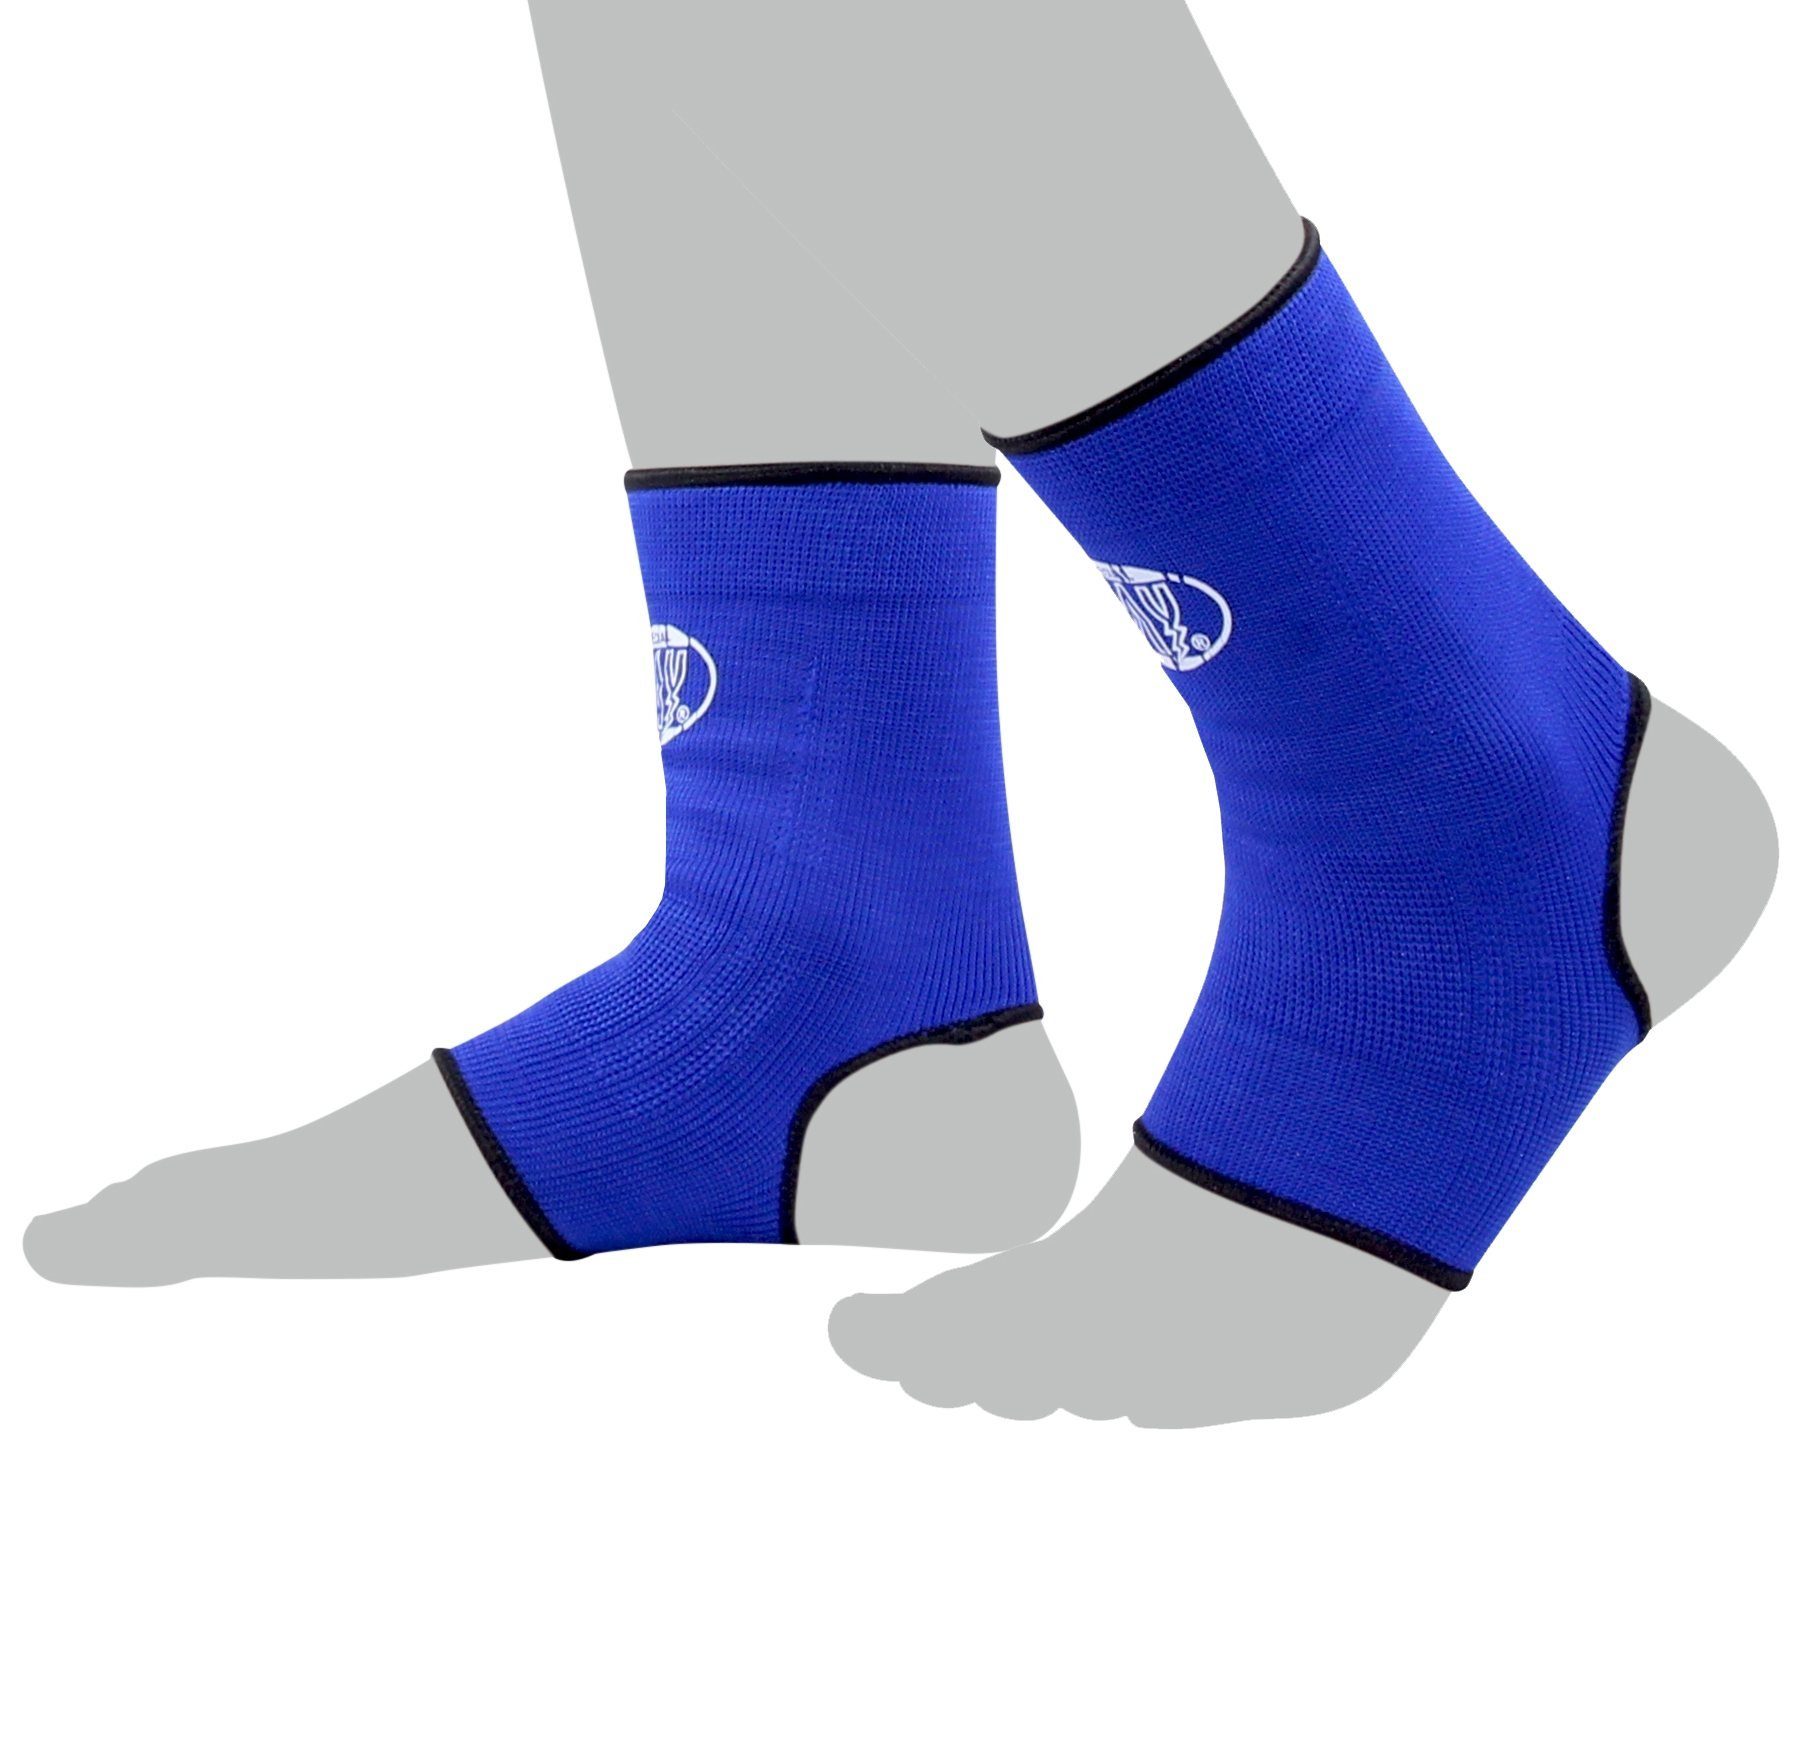 BAY-Sports Fußbandage Knöchelbandage Fußgelenkbandage Sprunggelenk blau, Anatomische Passform, Paar, können rechts und links getragen werden, Größen S - XL